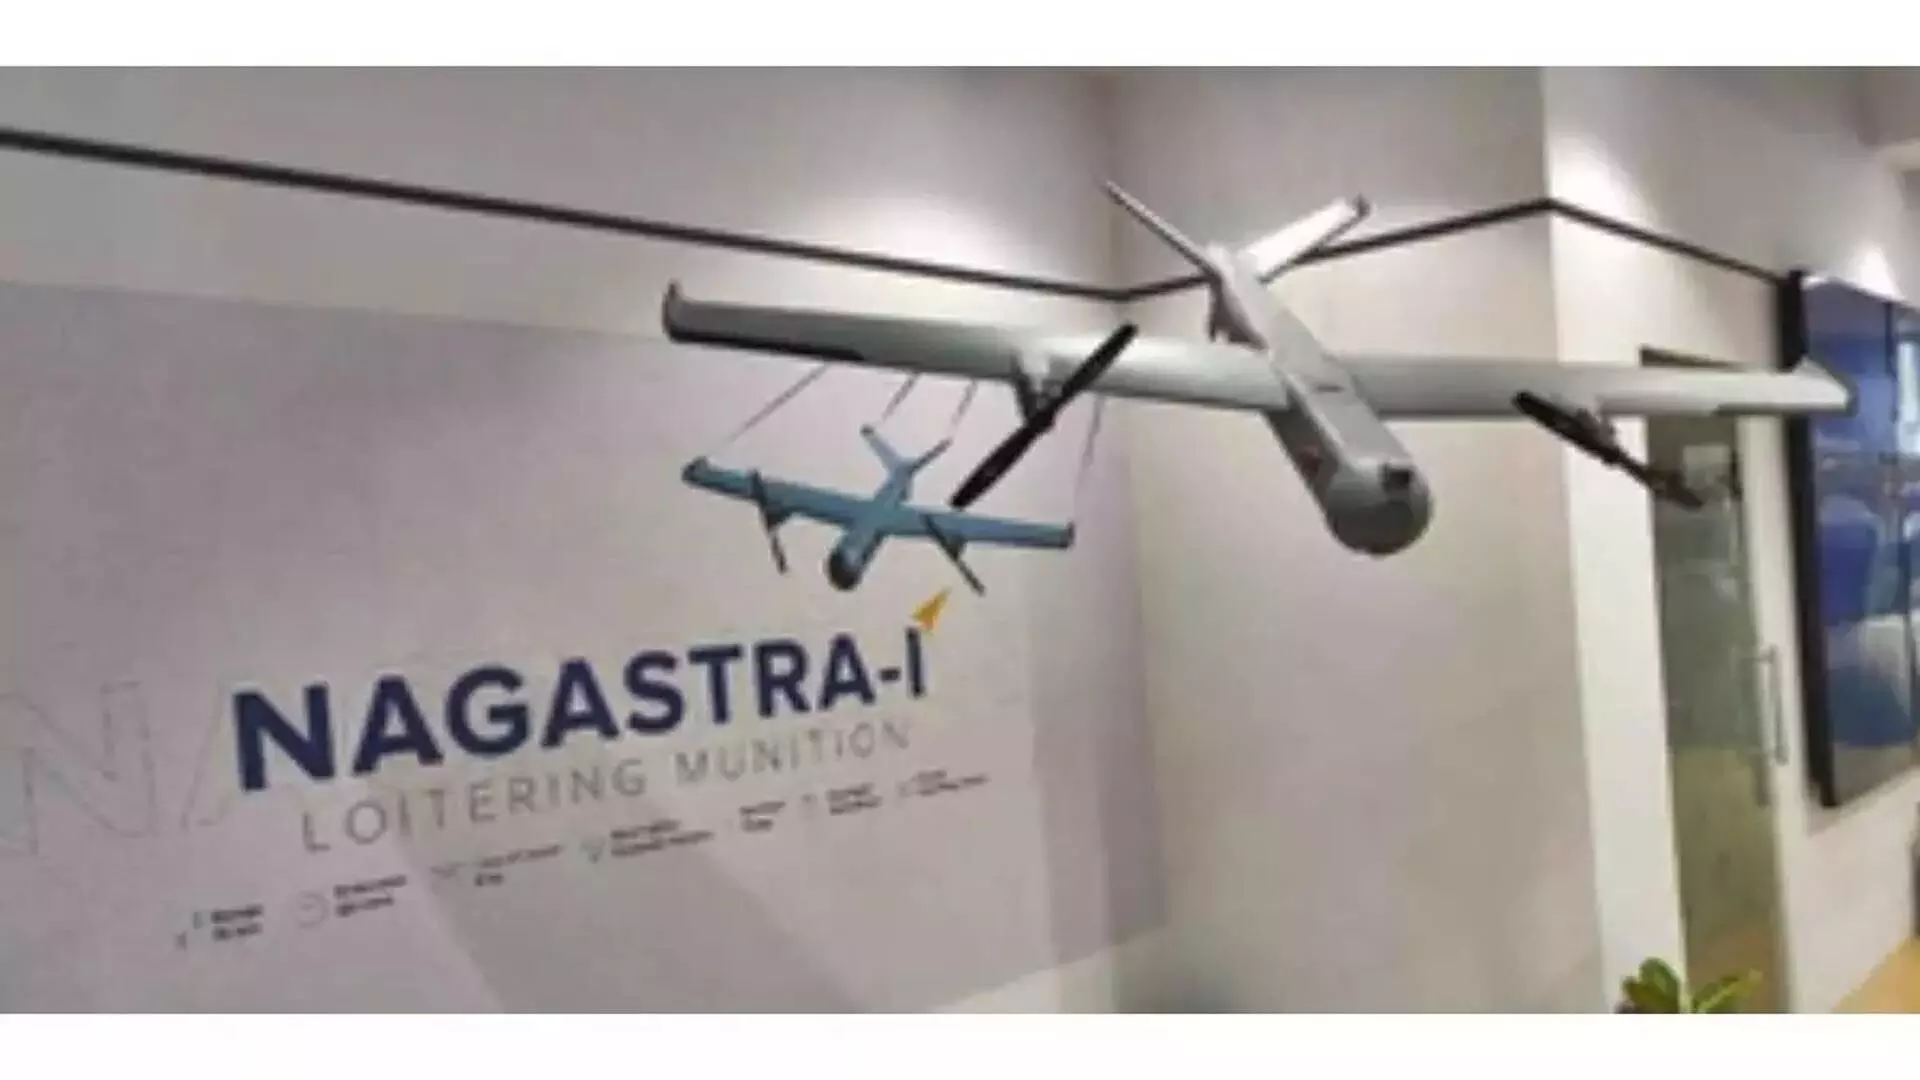 Indian Army भविष्य के ड्रोन युद्धों के लिए घातक ‘नागास्त्र-1’ के साथ तैयार